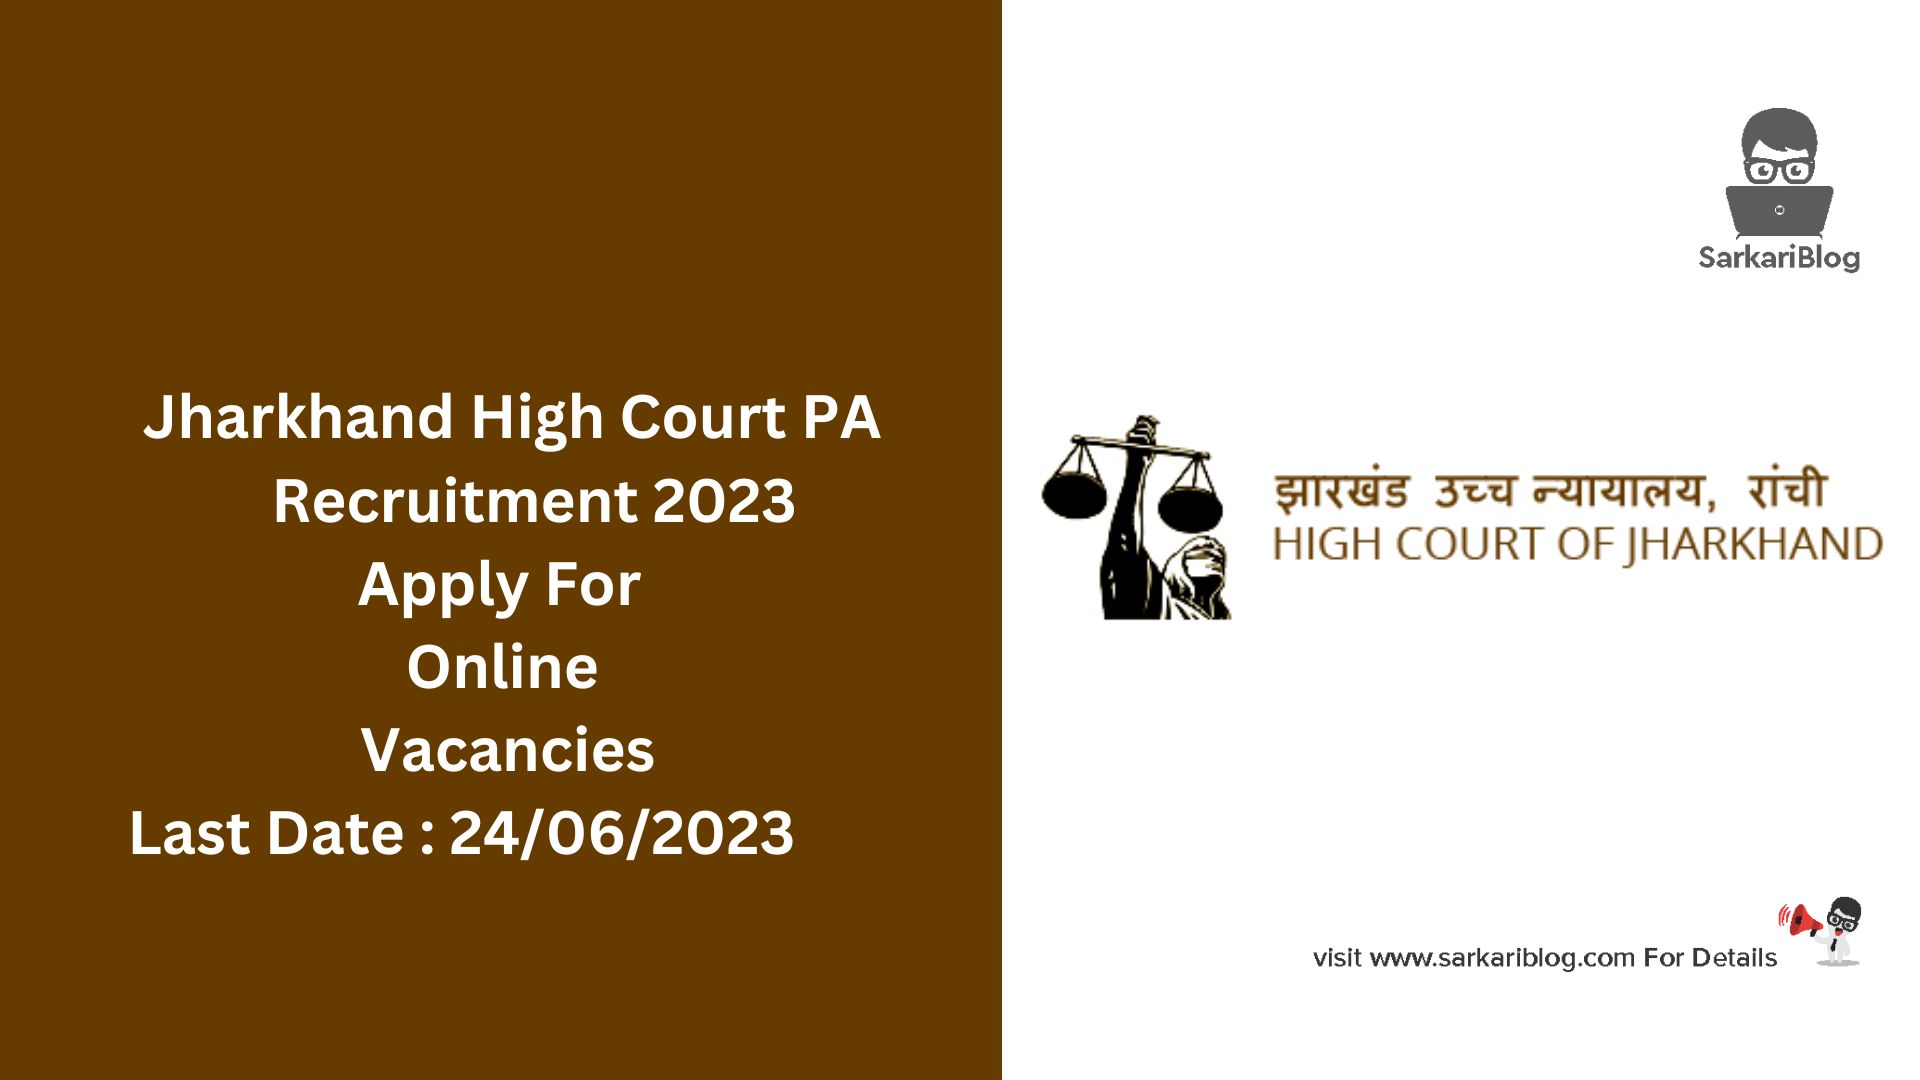 Jharkhand High Court PA Recruitment 2023